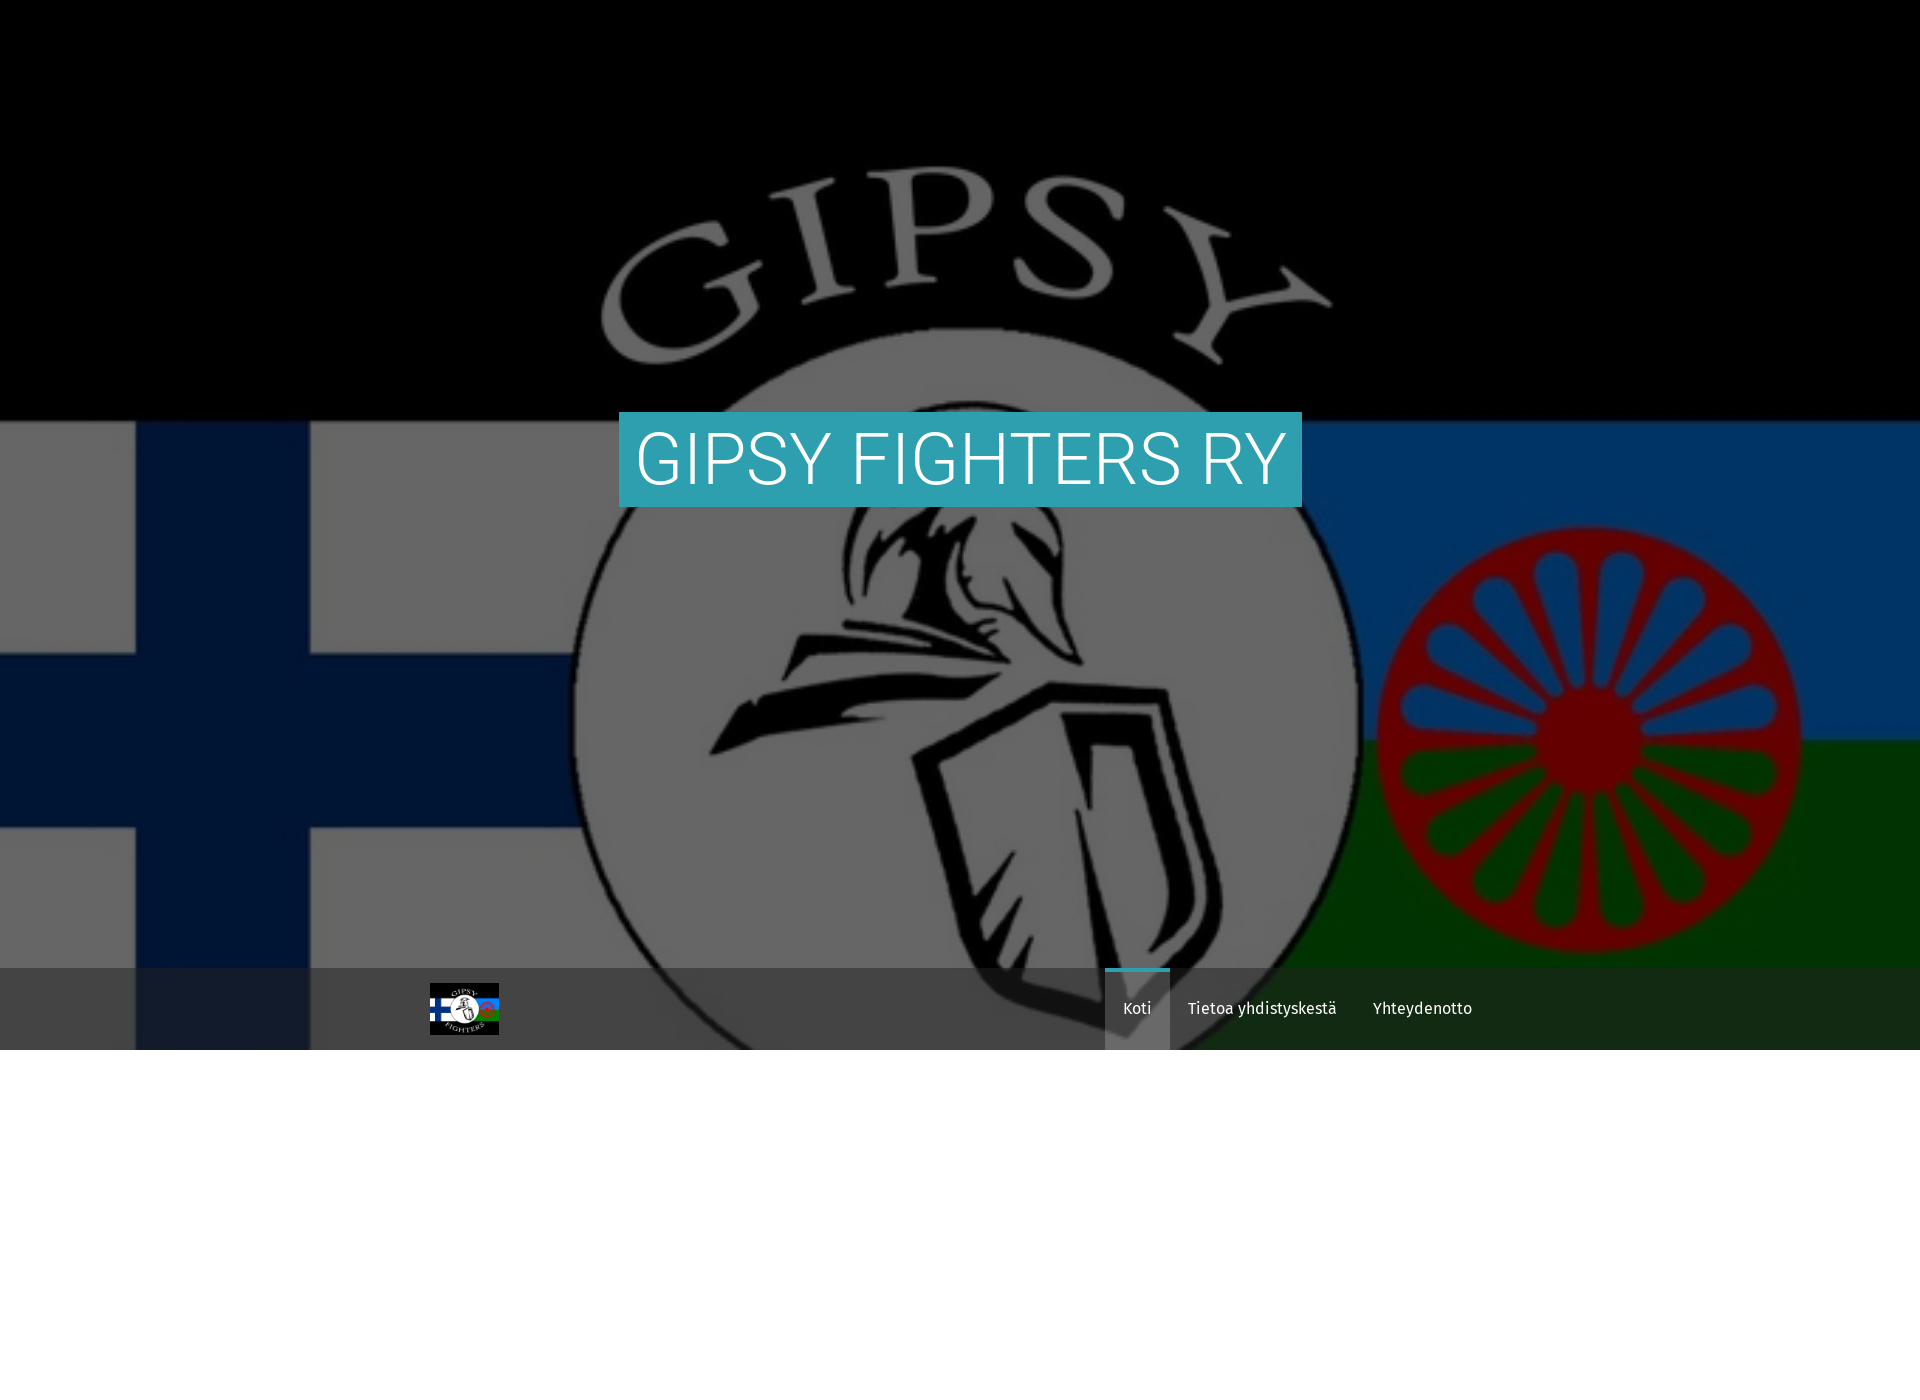 Näyttökuva gipsyfighters.fi